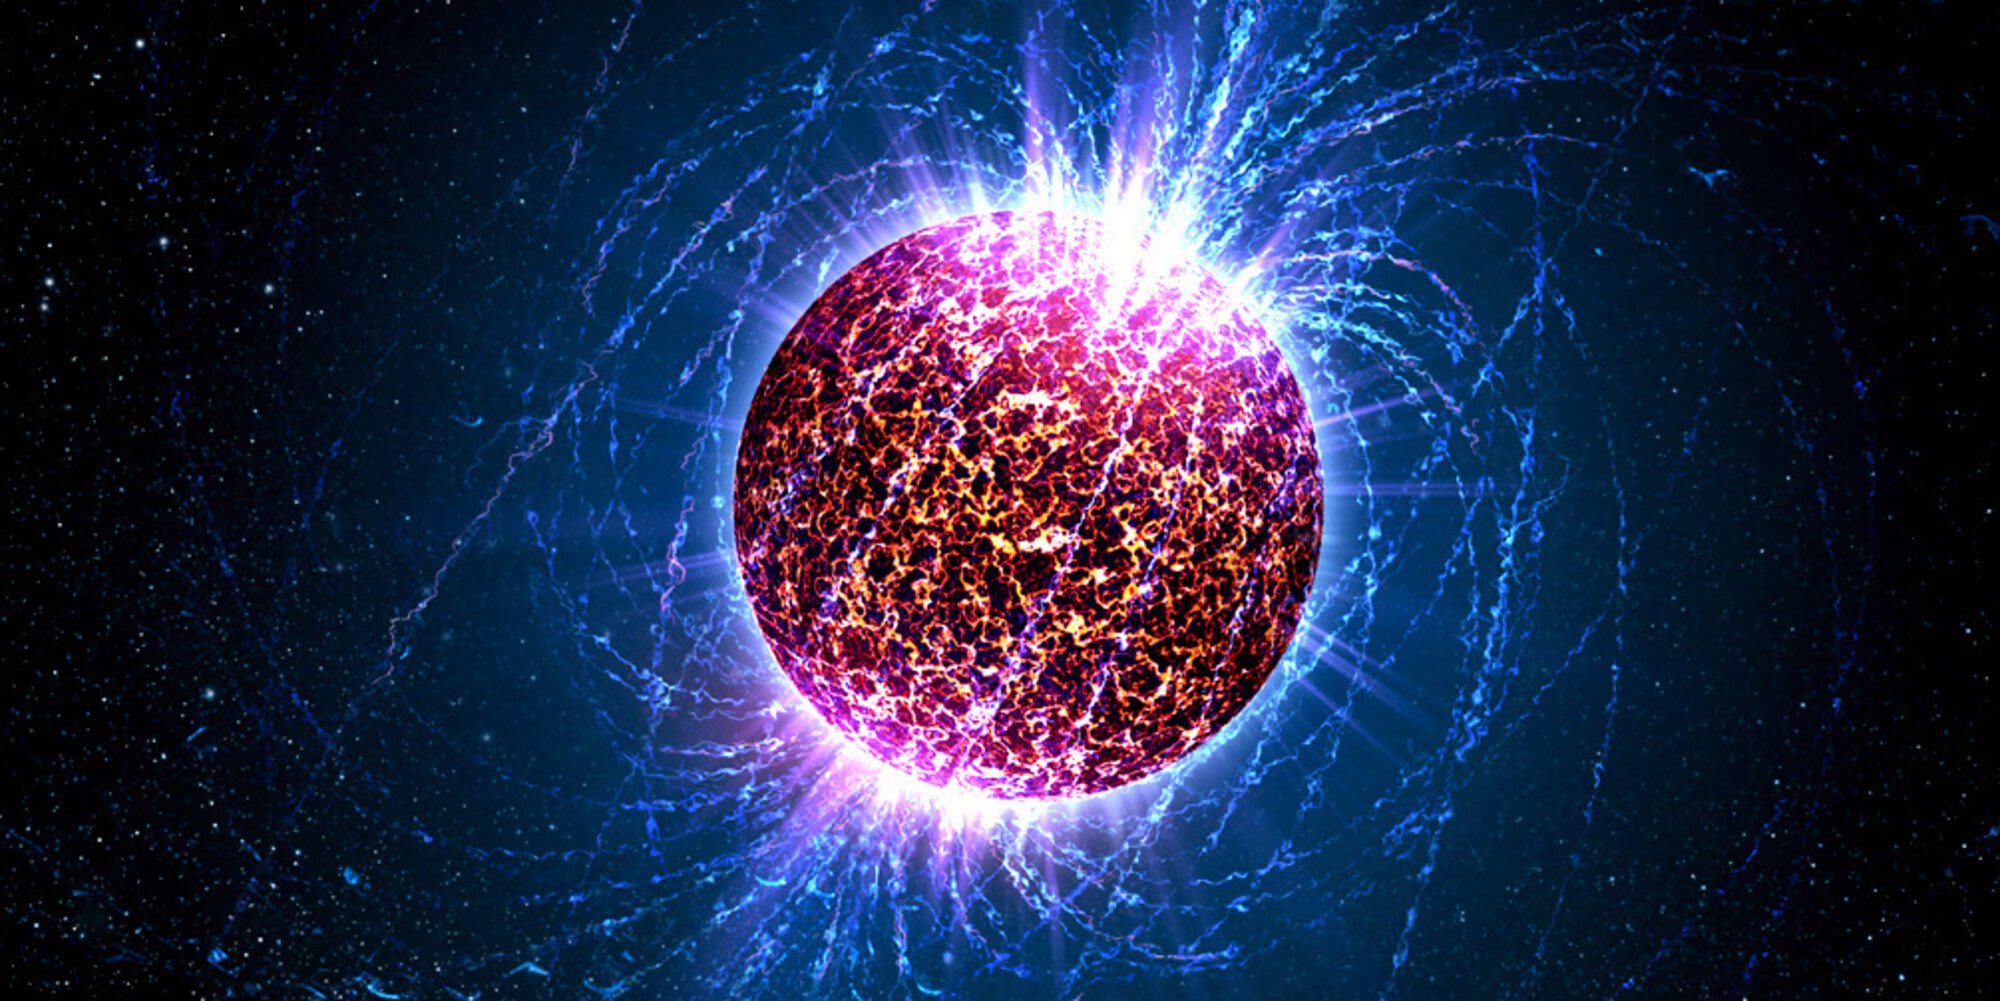 Opdaget en unik neutronstjerne